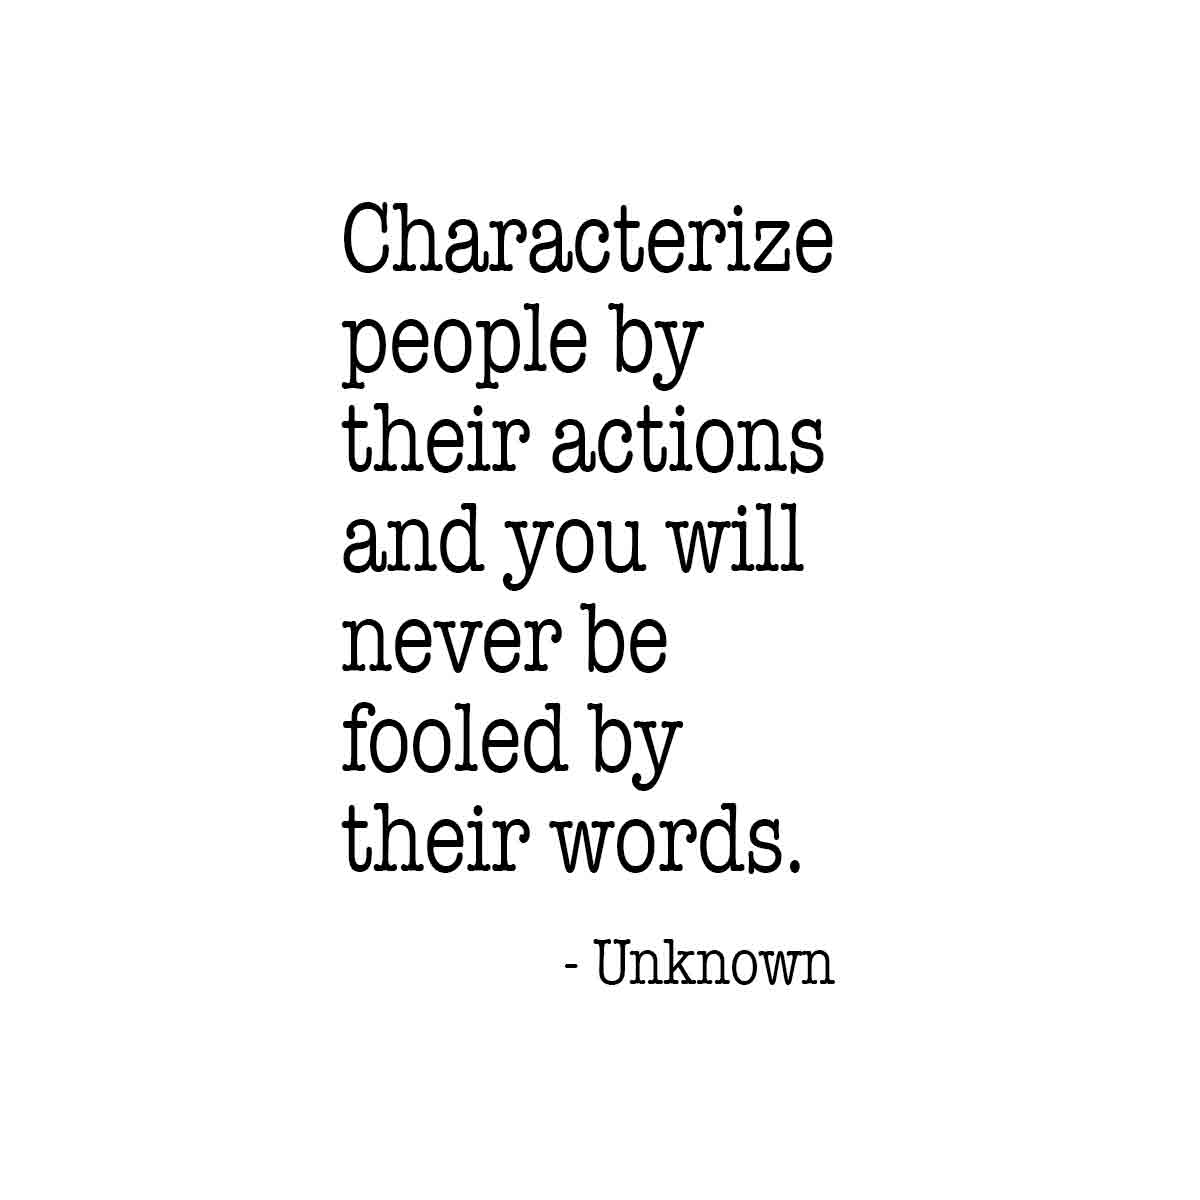 Characterize people